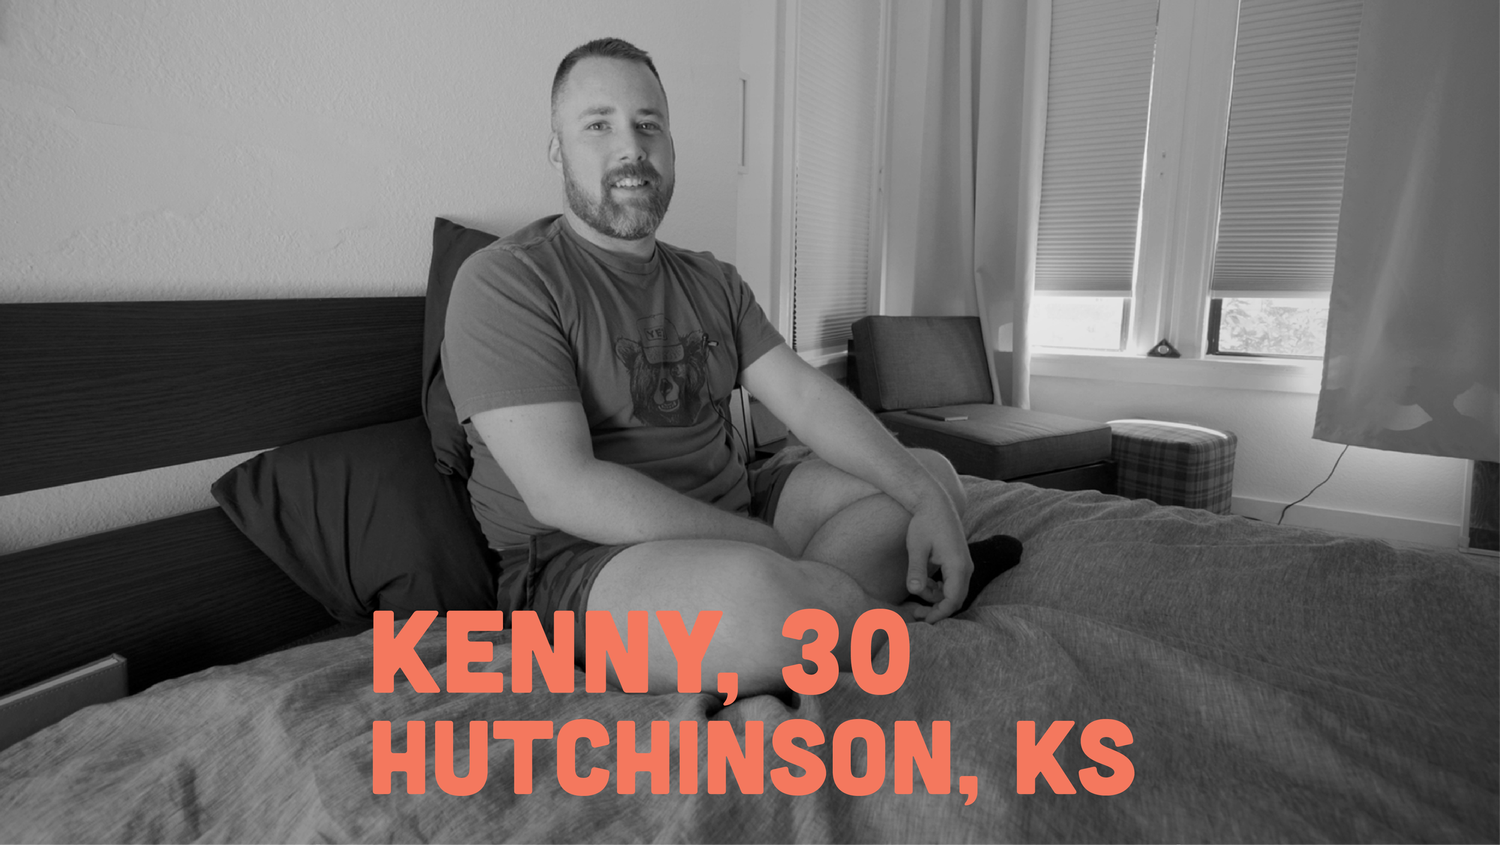 Fruitbowl - S4E6 - Kenny, 30. Hutchinson, KS